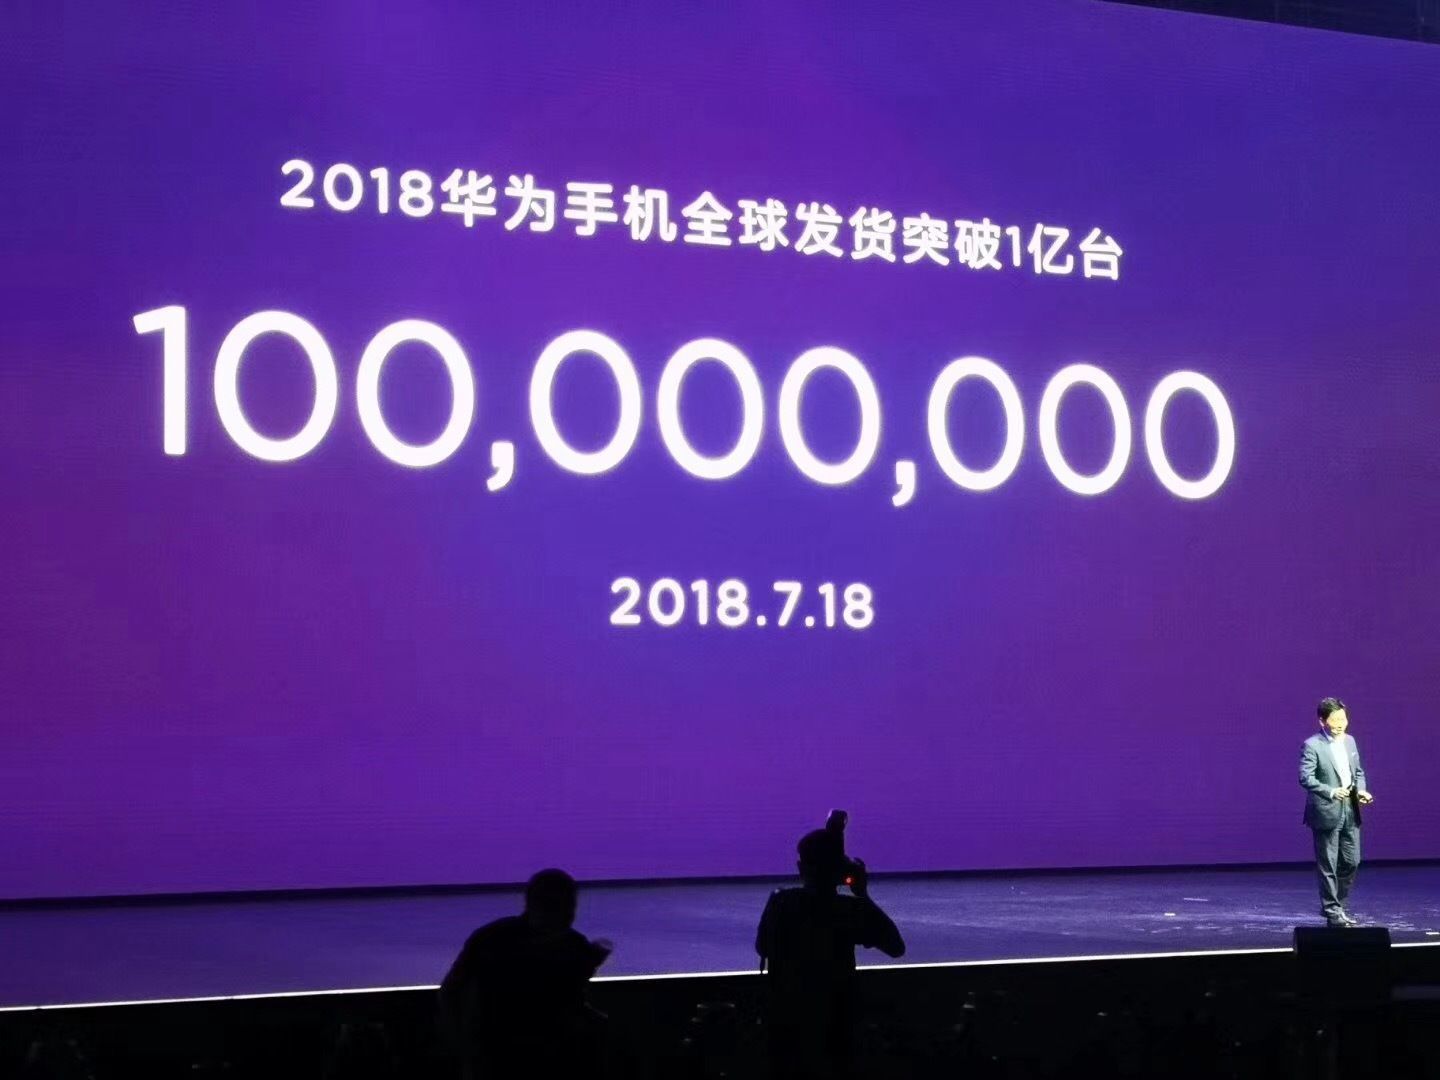 Huawei продала 100 миллионов устройств всего за 7 месяцев, следующая цель - 200 миллионов, чтобы закрыть в этом году